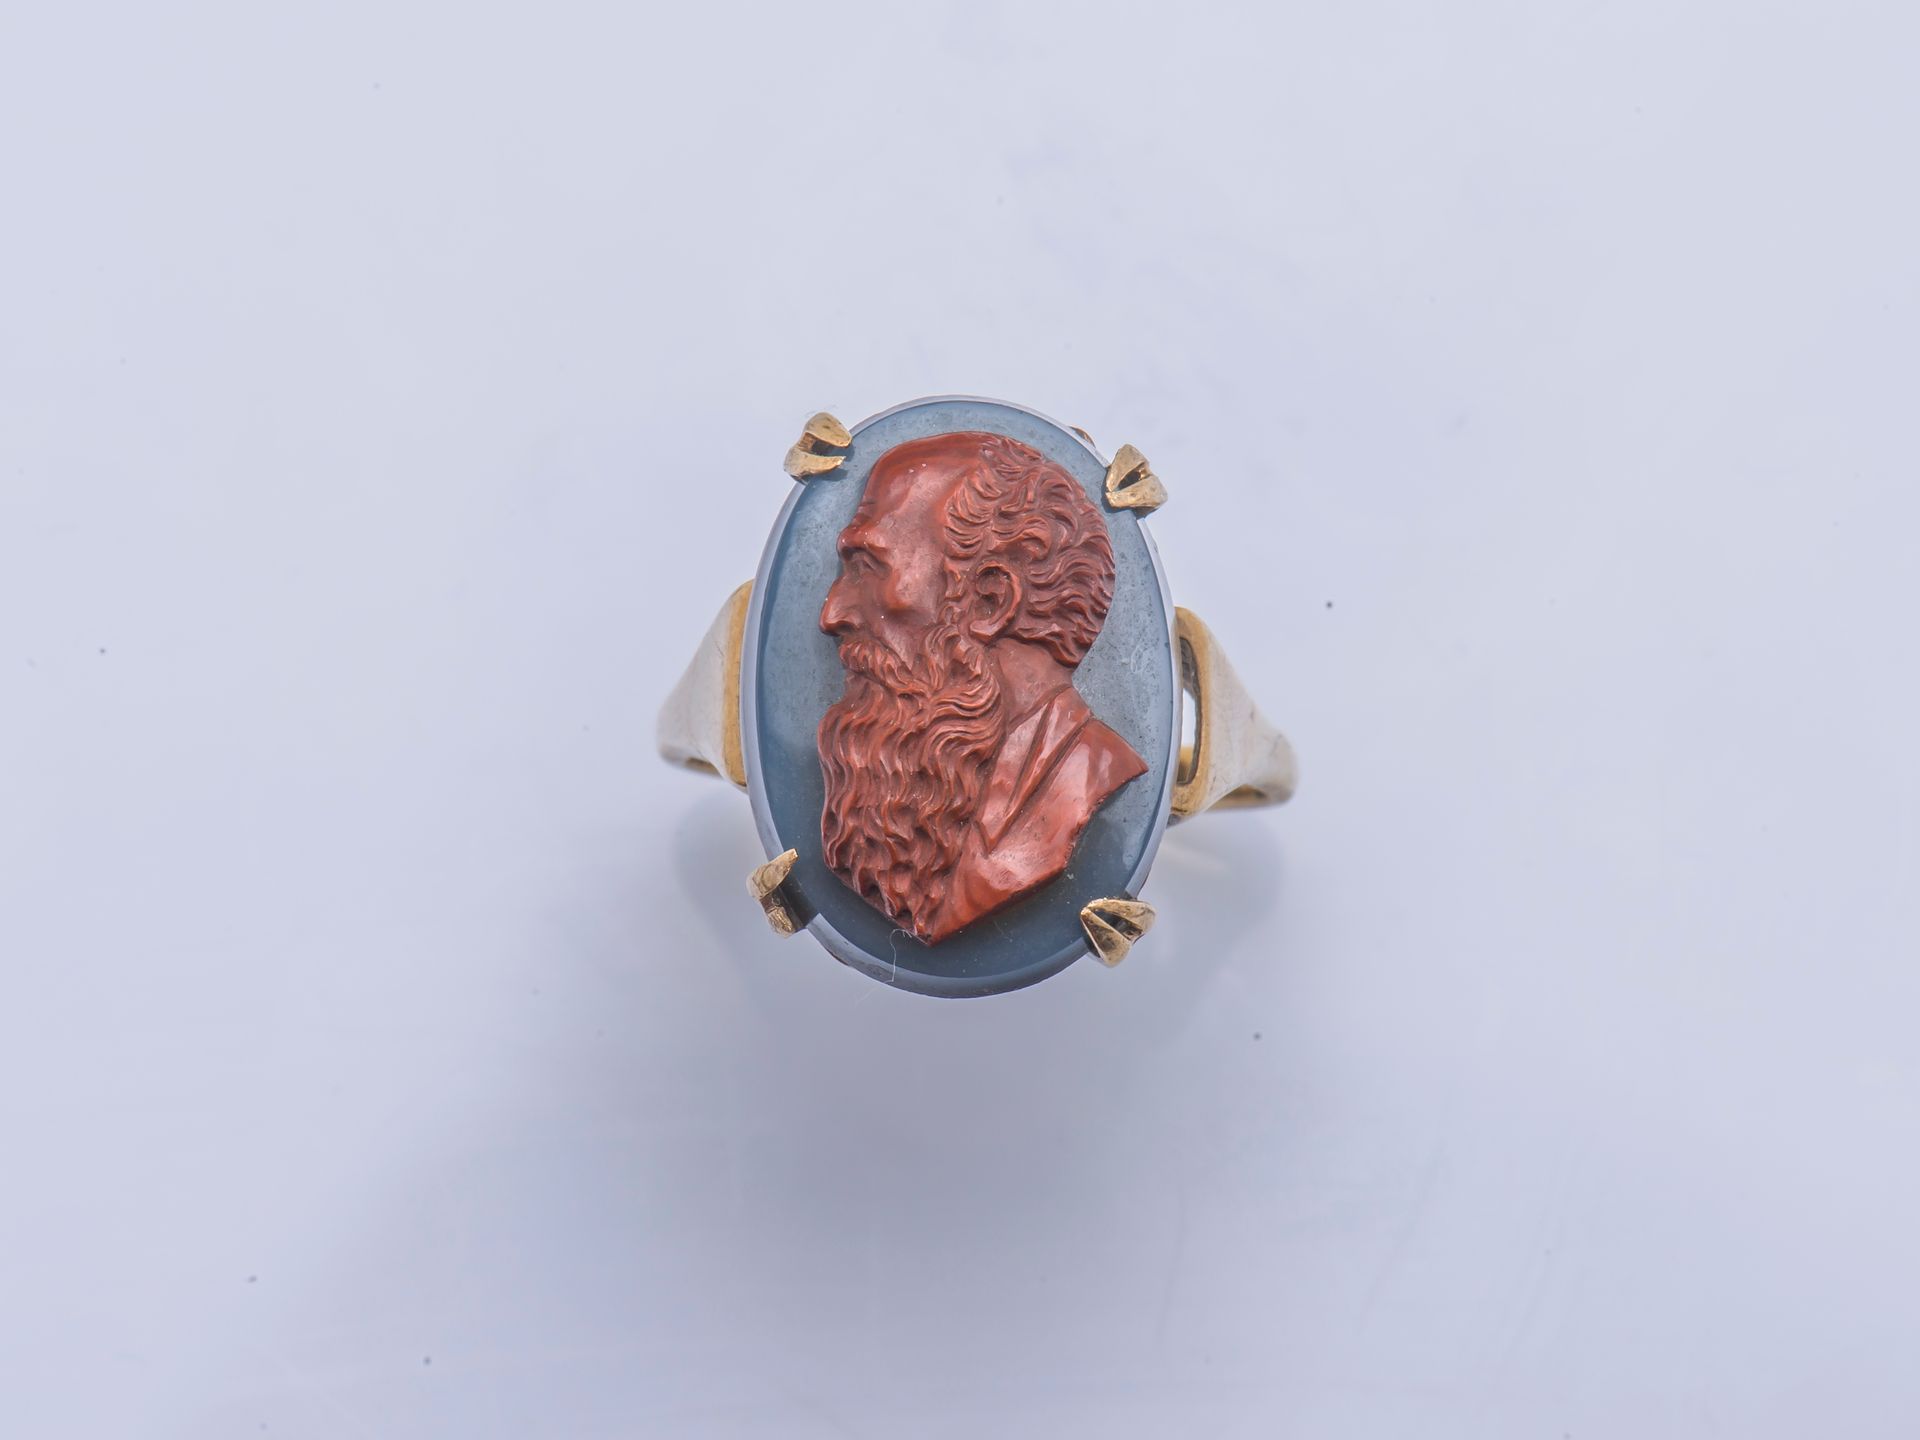 Null 9克拉（千分之三十五）的黄金戒指上镶嵌着玛瑙浮雕，代表一个大胡子的人的轮廓（意外的是一个爪子）。

手指大小：58 总重量：6.4克